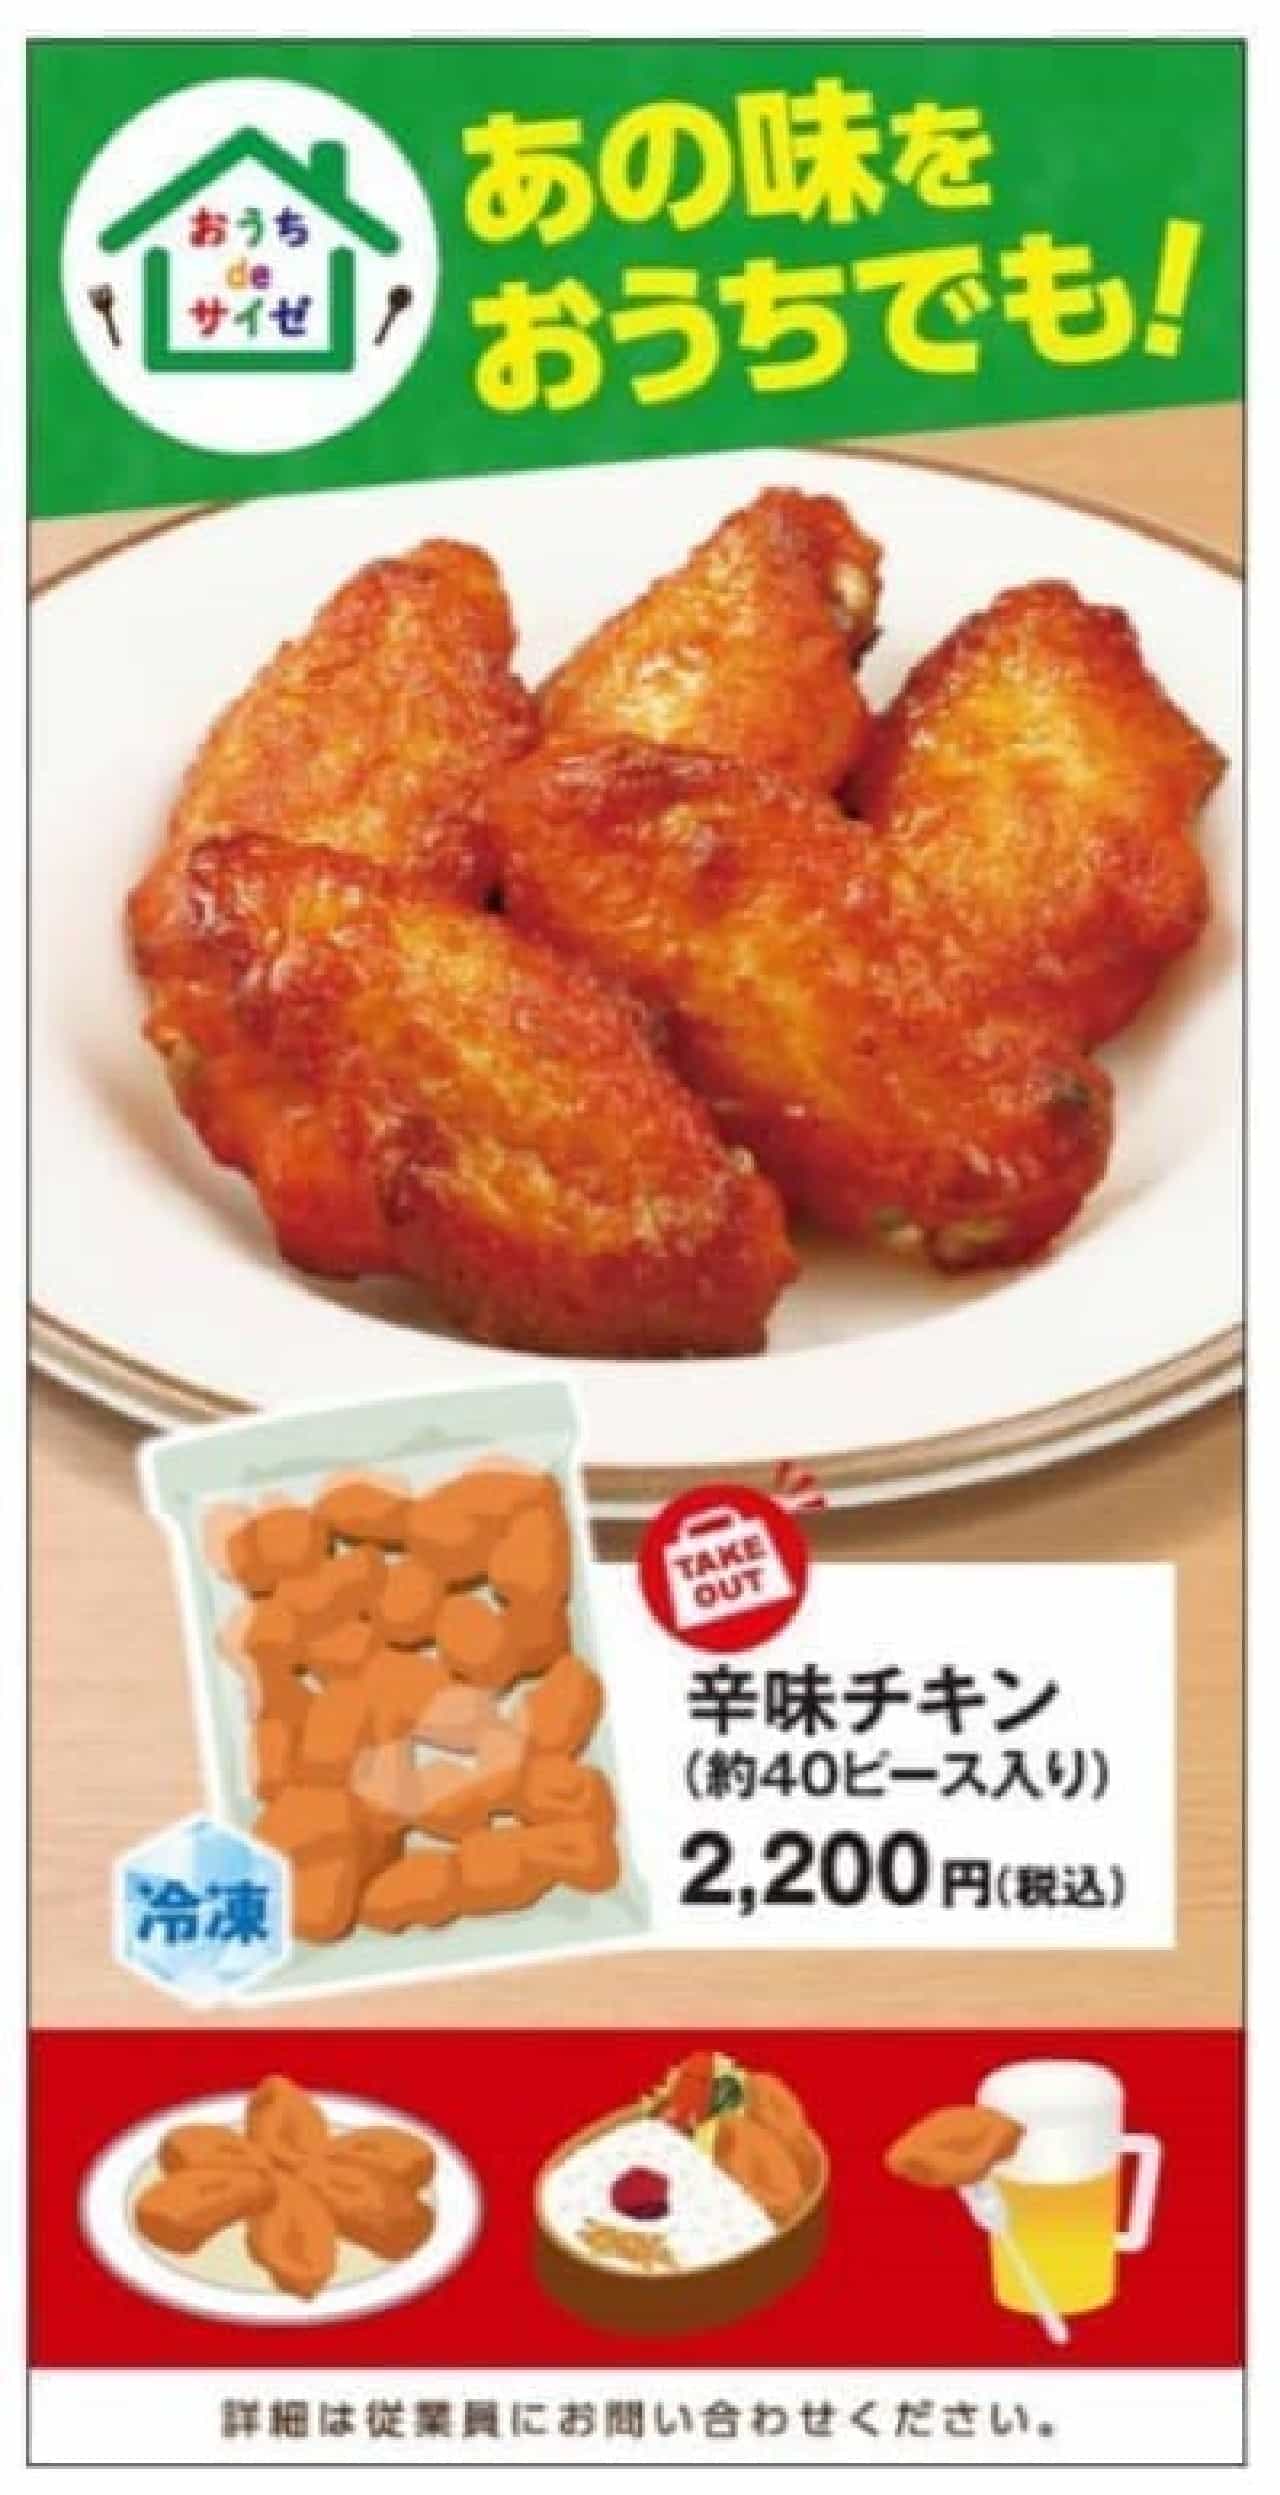 Saizeriya "Spicy Chicken" Takeaway Sales Start